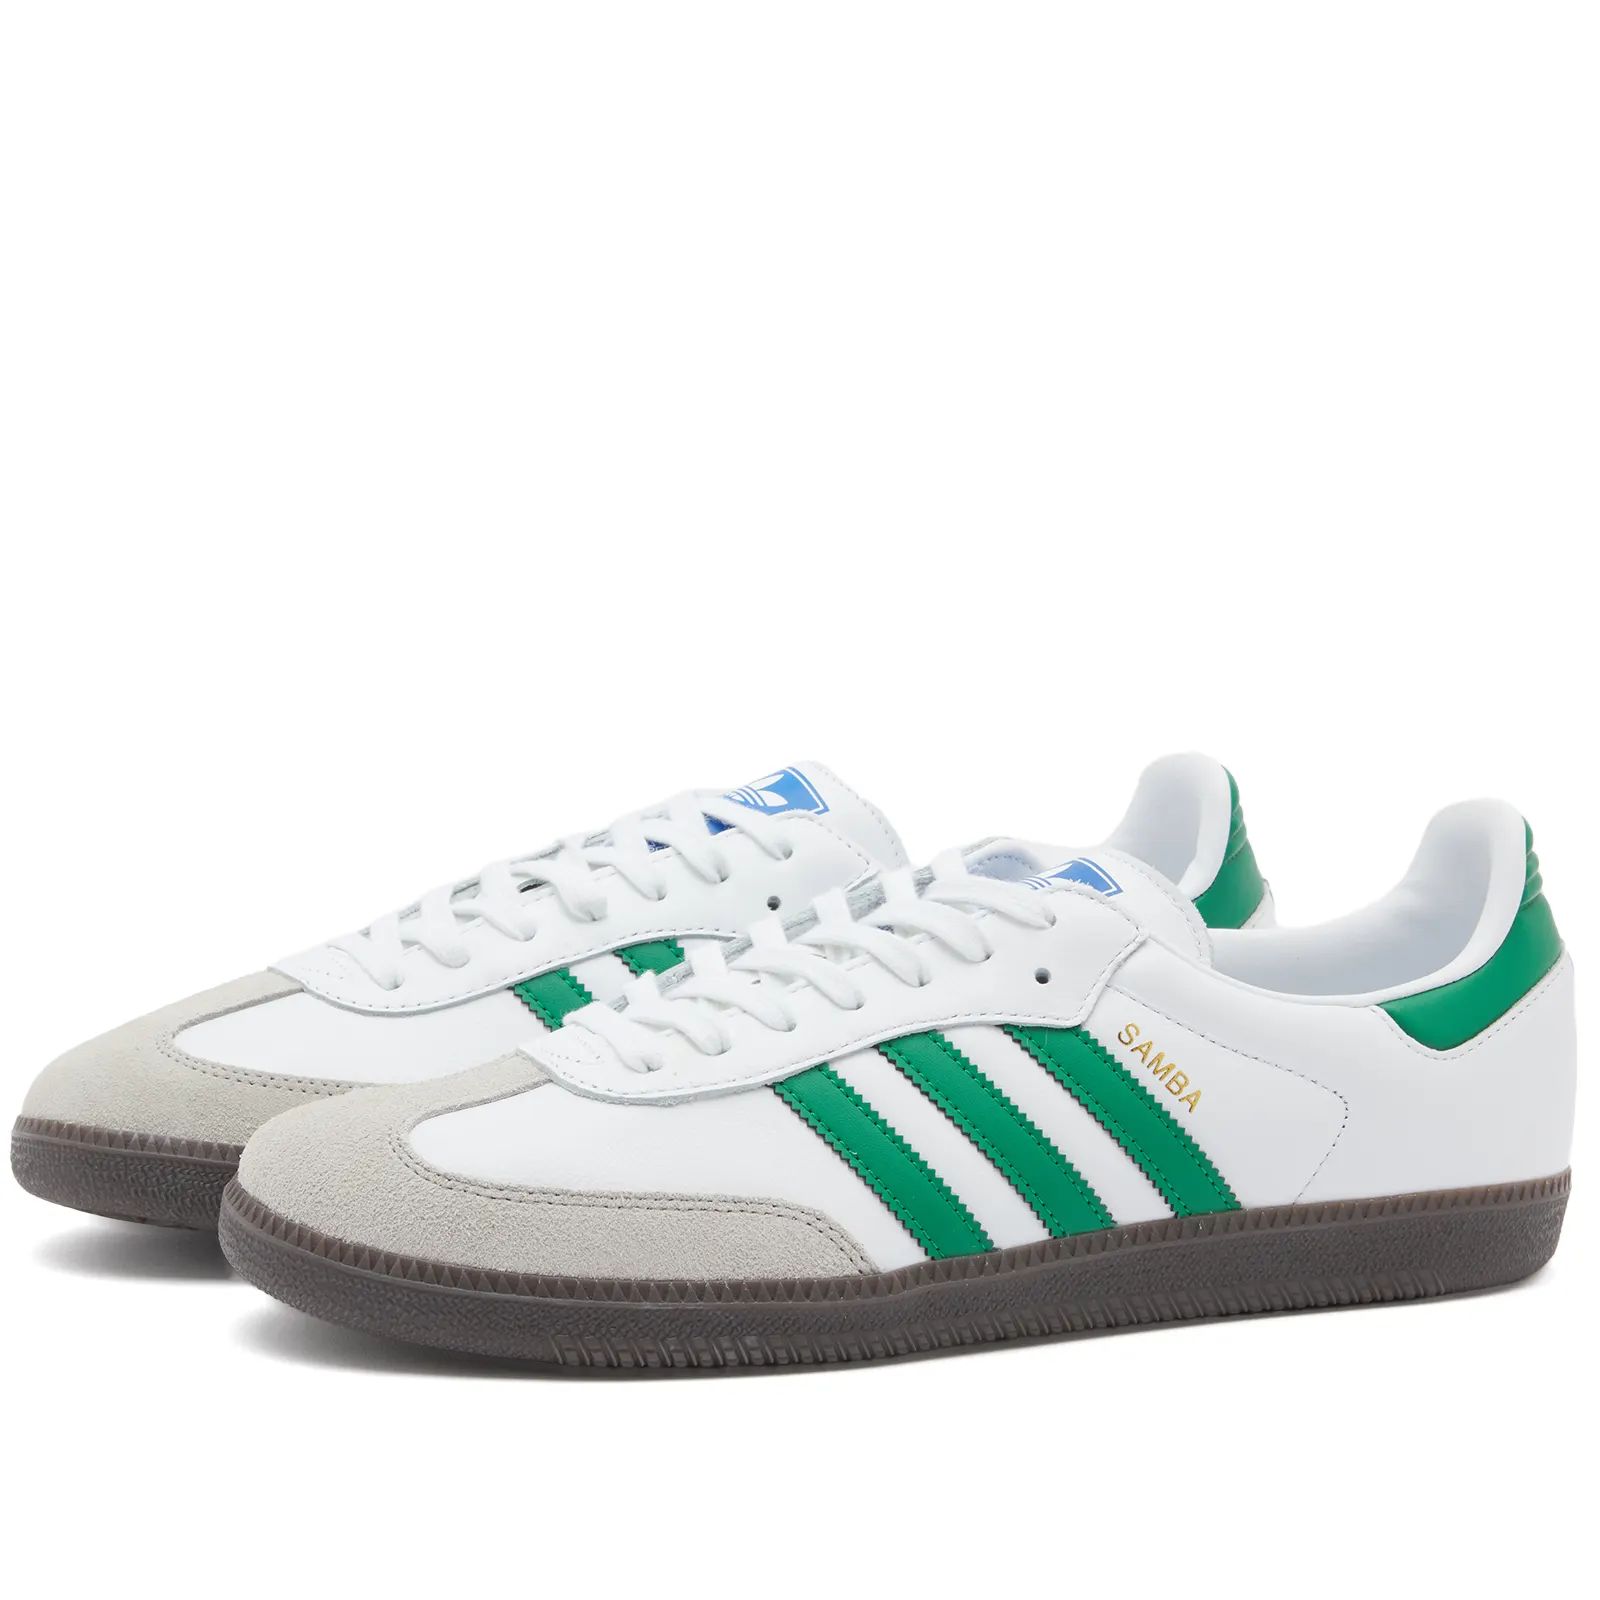 Adidas Samba OG White & Green | END. | End Clothing (UK & IE)